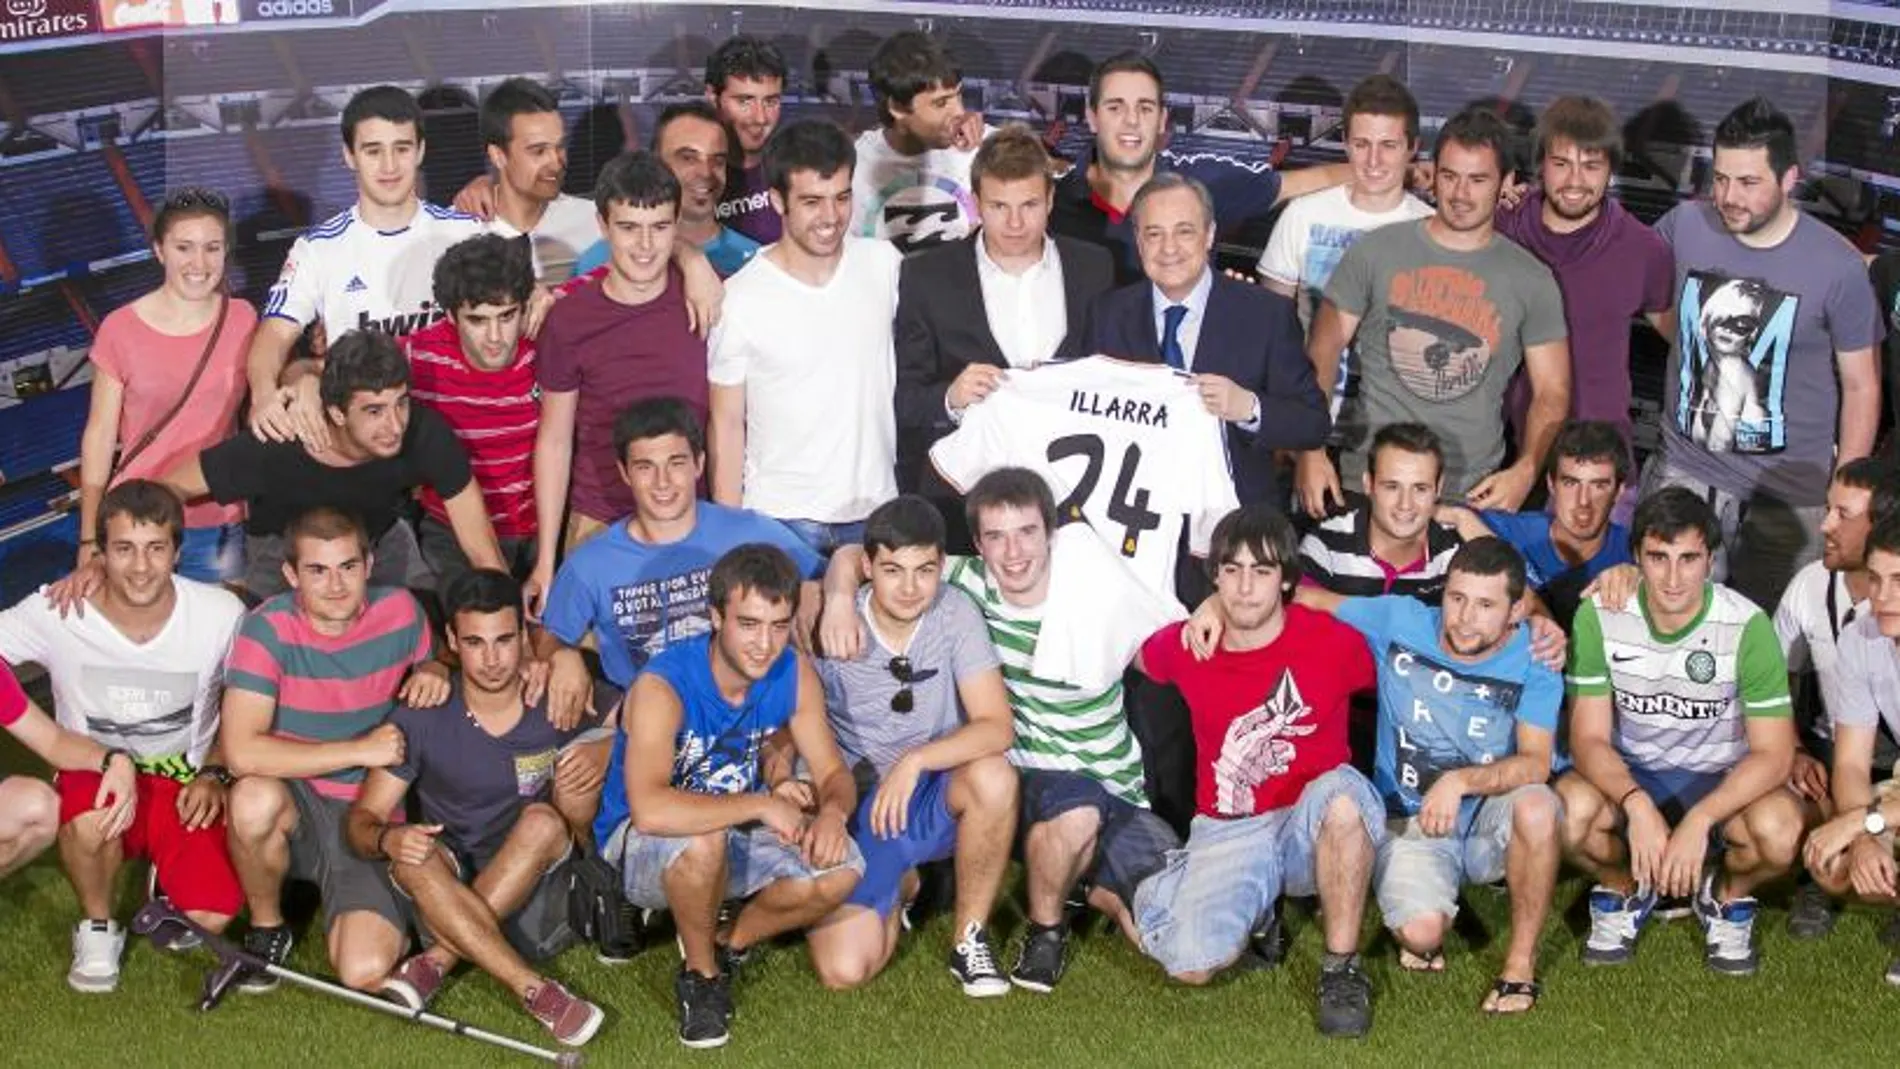 El nuevo jugador del Madrid llegó con más de 30 amigos de su pueblo